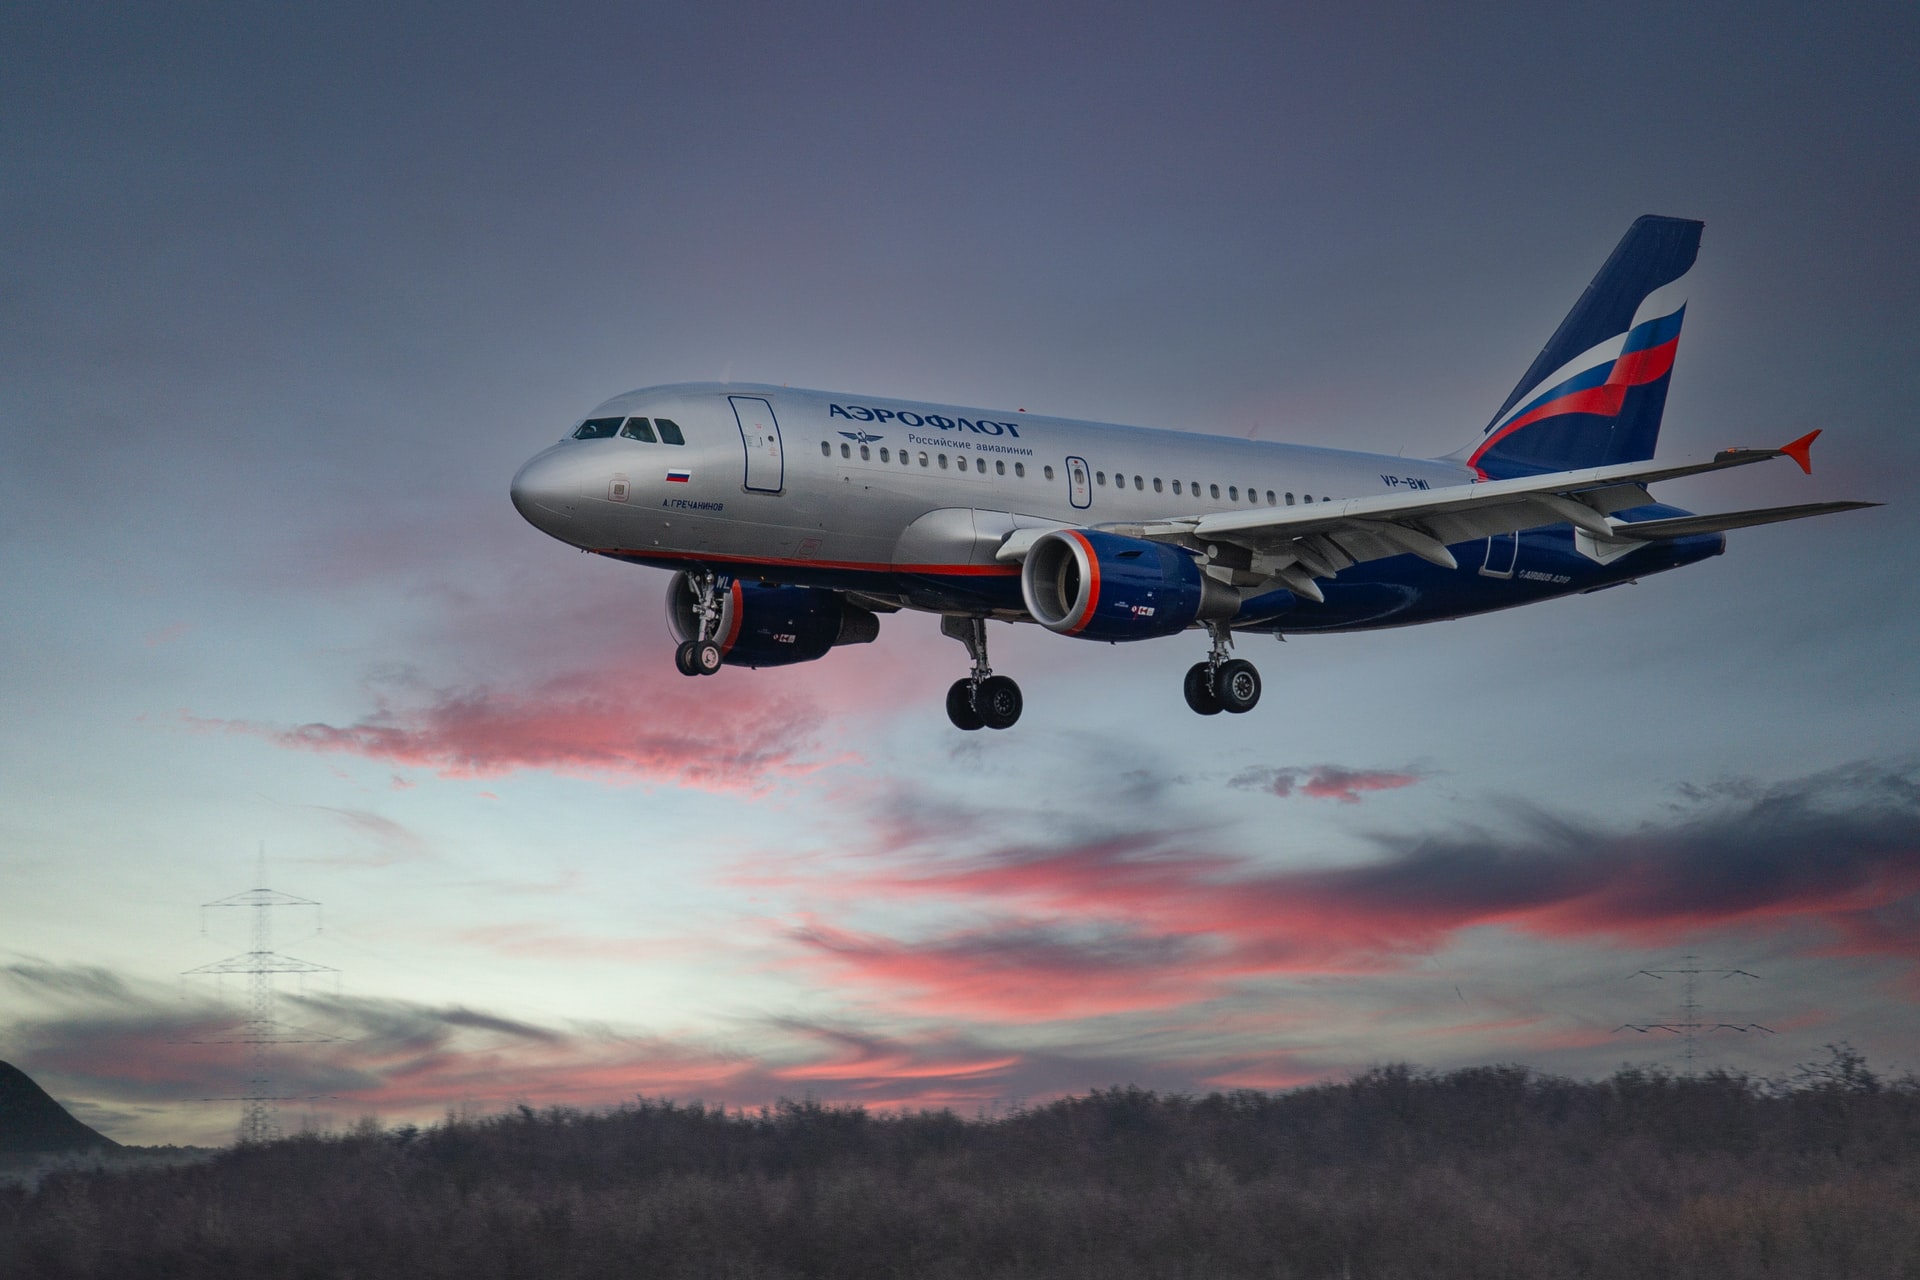 Η ρωσική αεροπορική εταιρεία Aeroflot © Unsplash